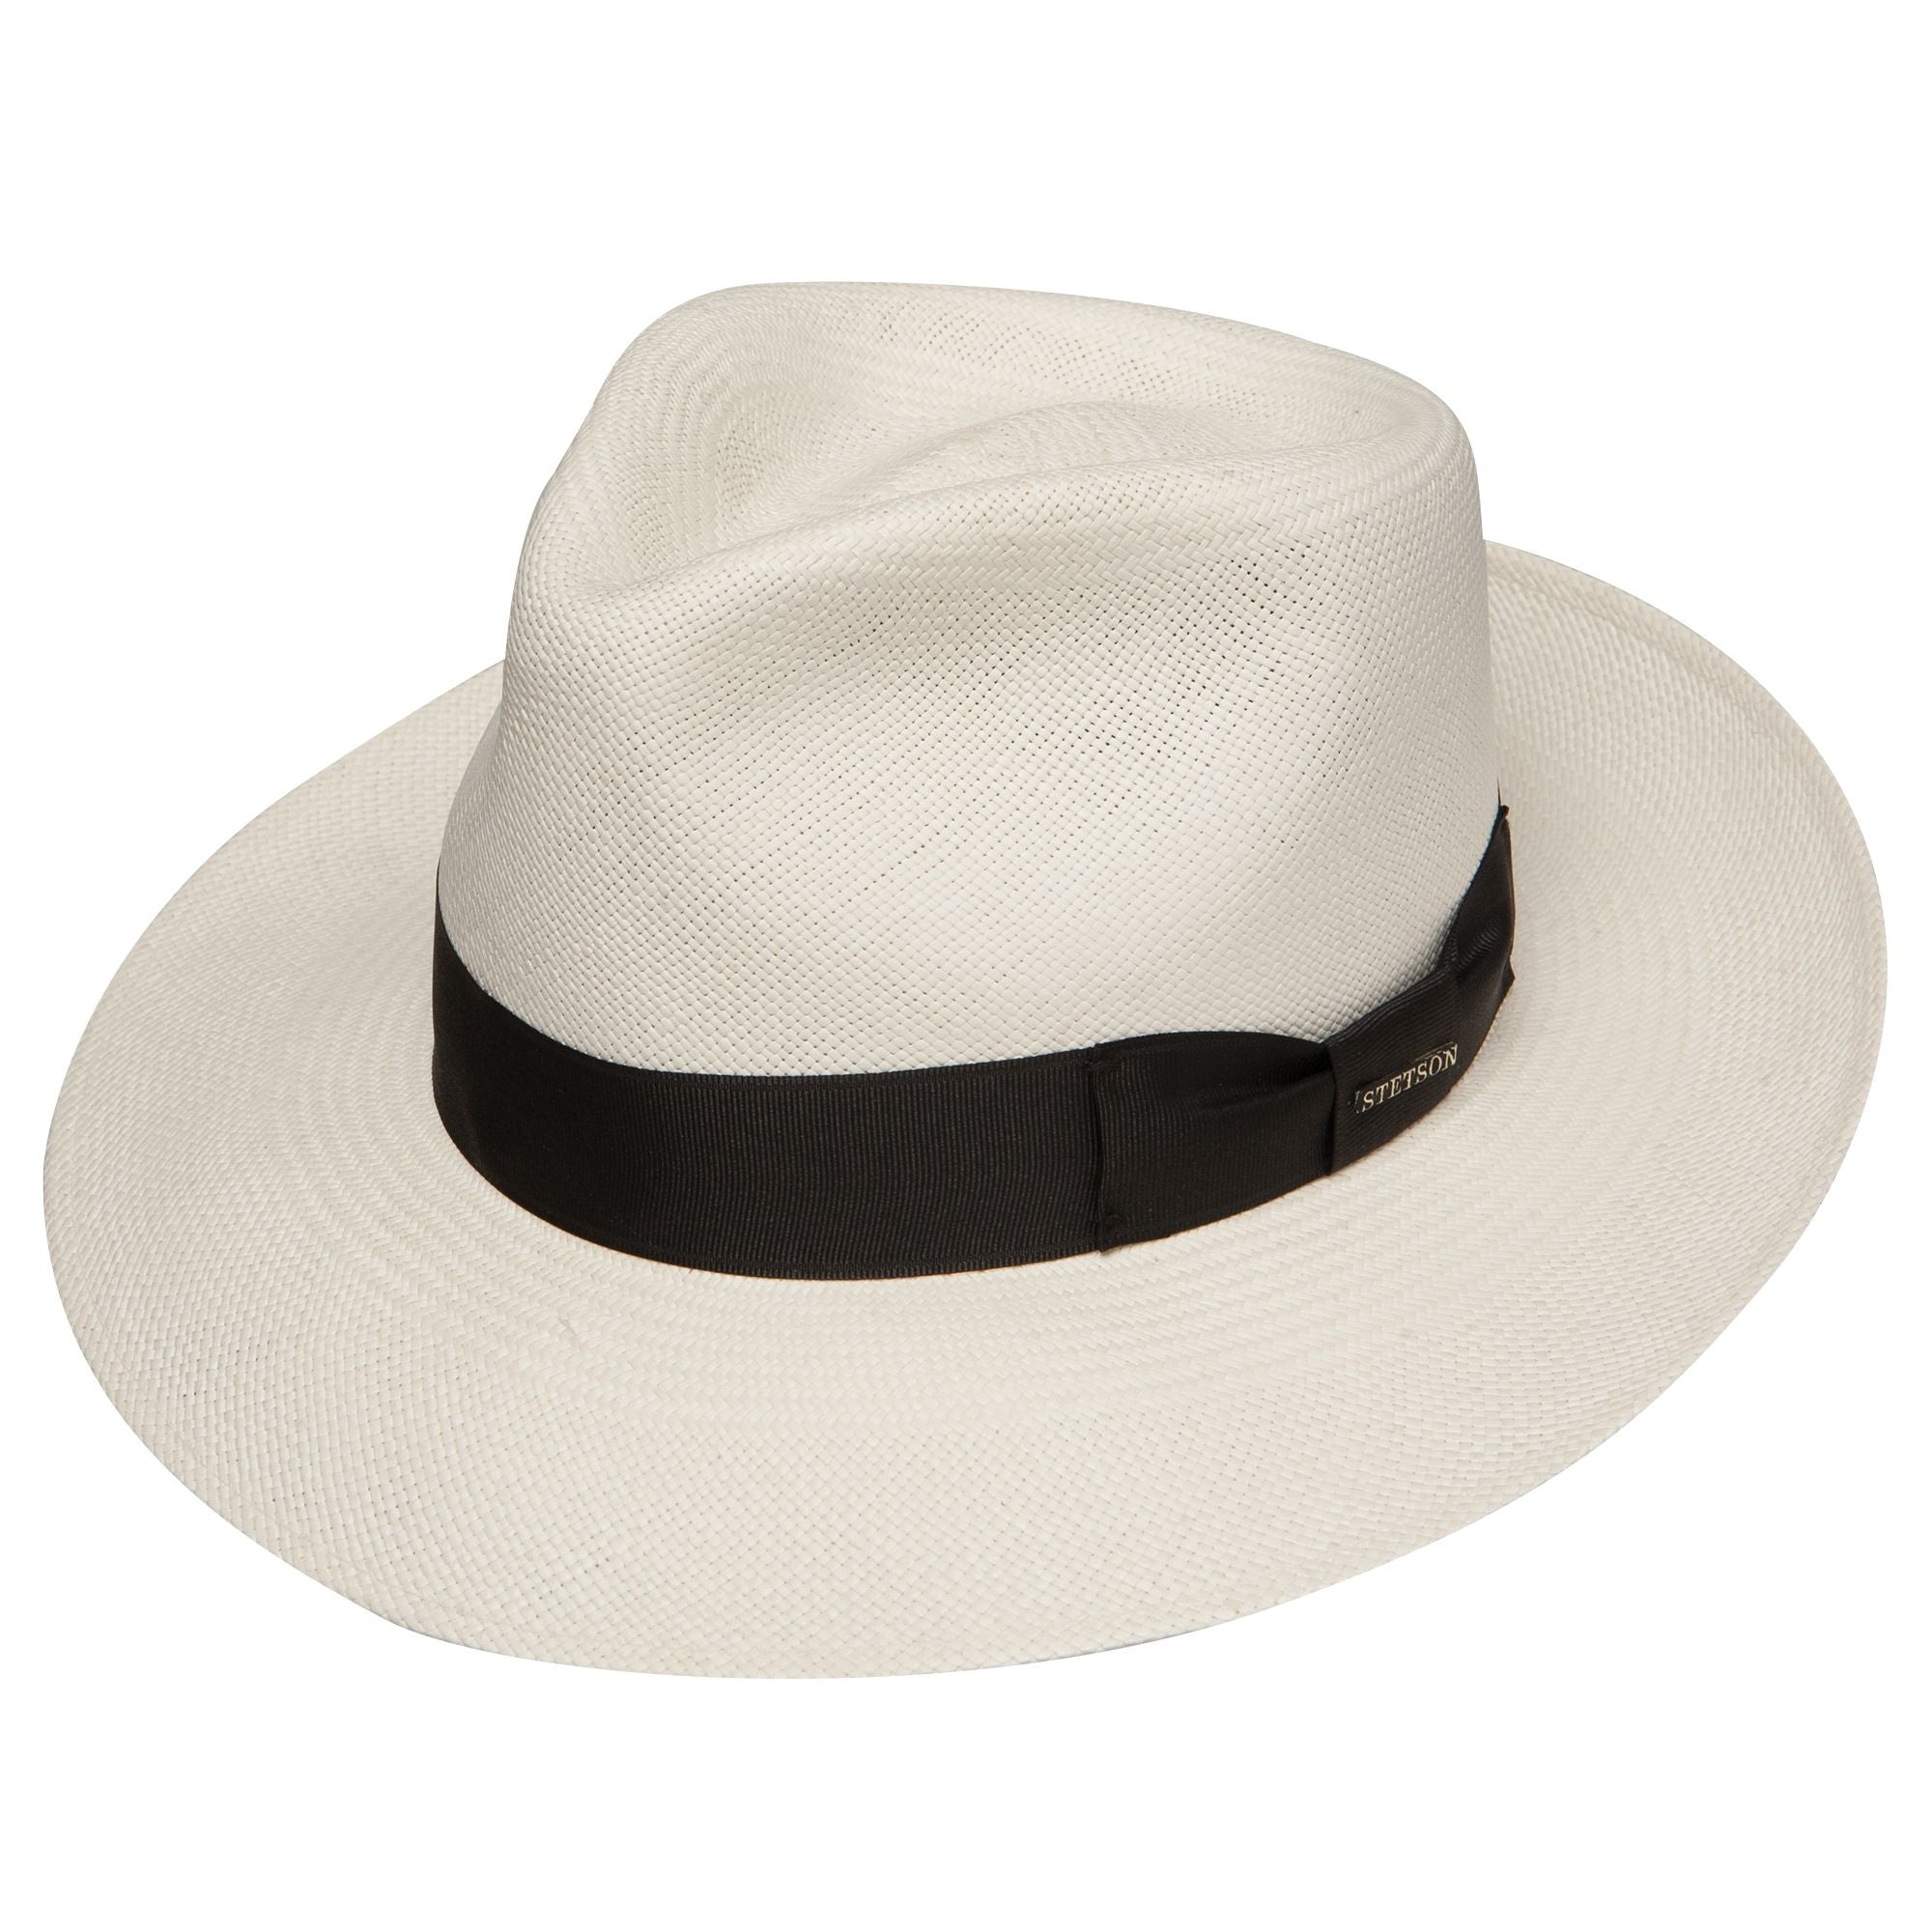 Stetson Adventurer Shantung Straw Hat in Natural